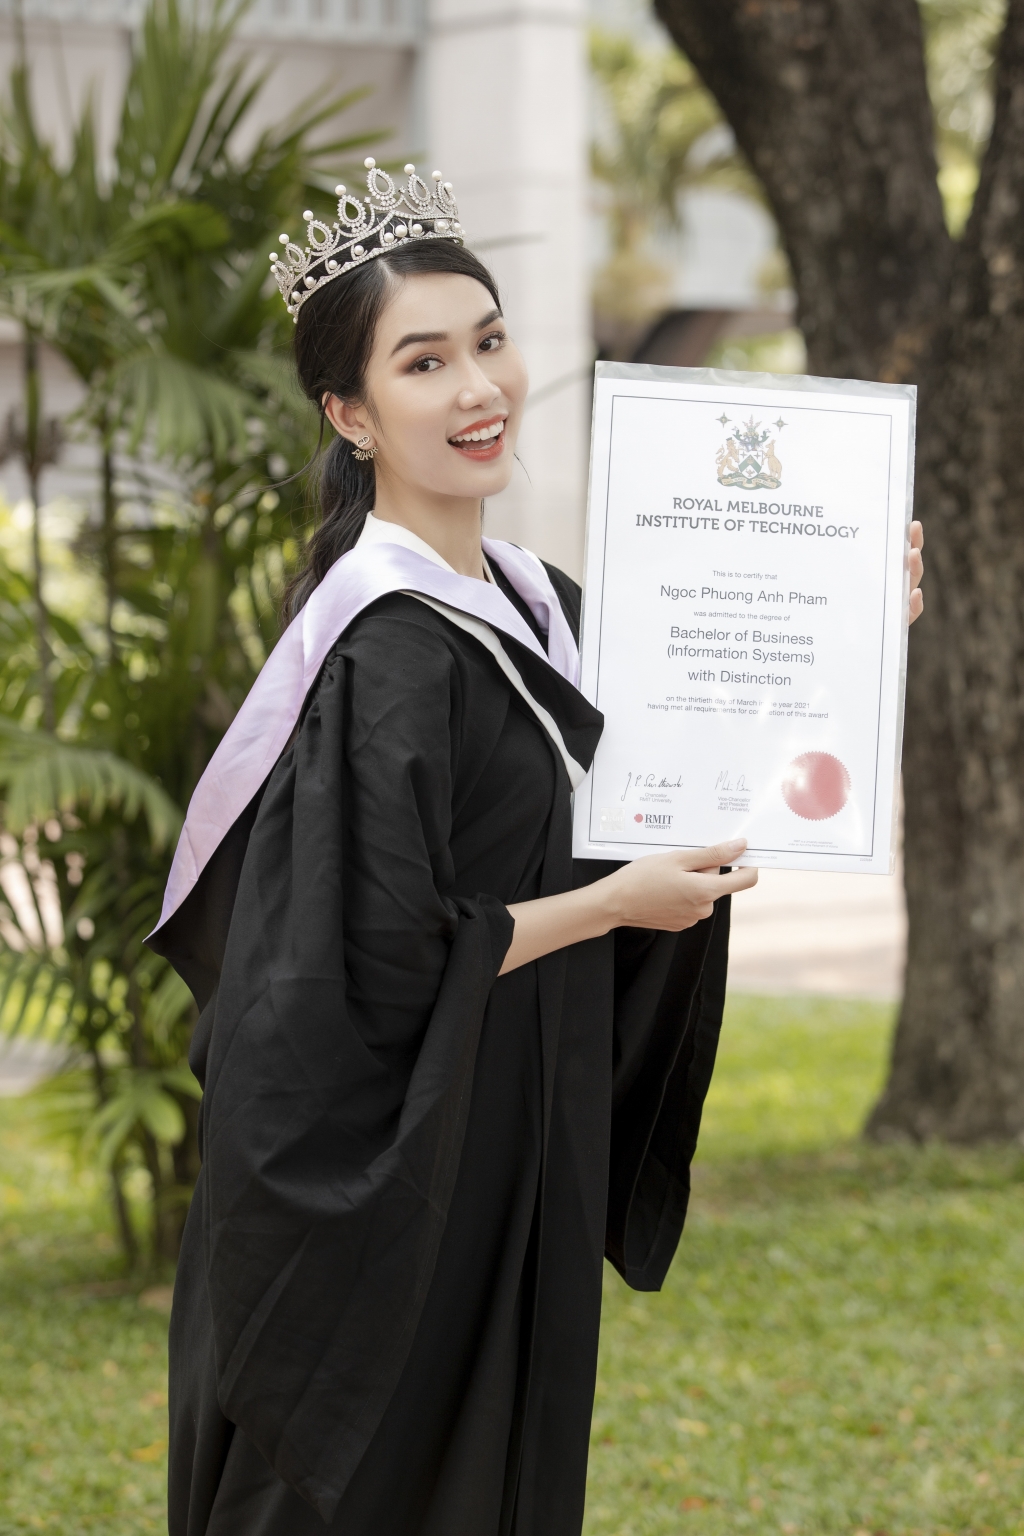 Xứng danh nguời đẹp thông minh, Á hậu Phương Anh tốt nghiệp thủ khoa Đại học